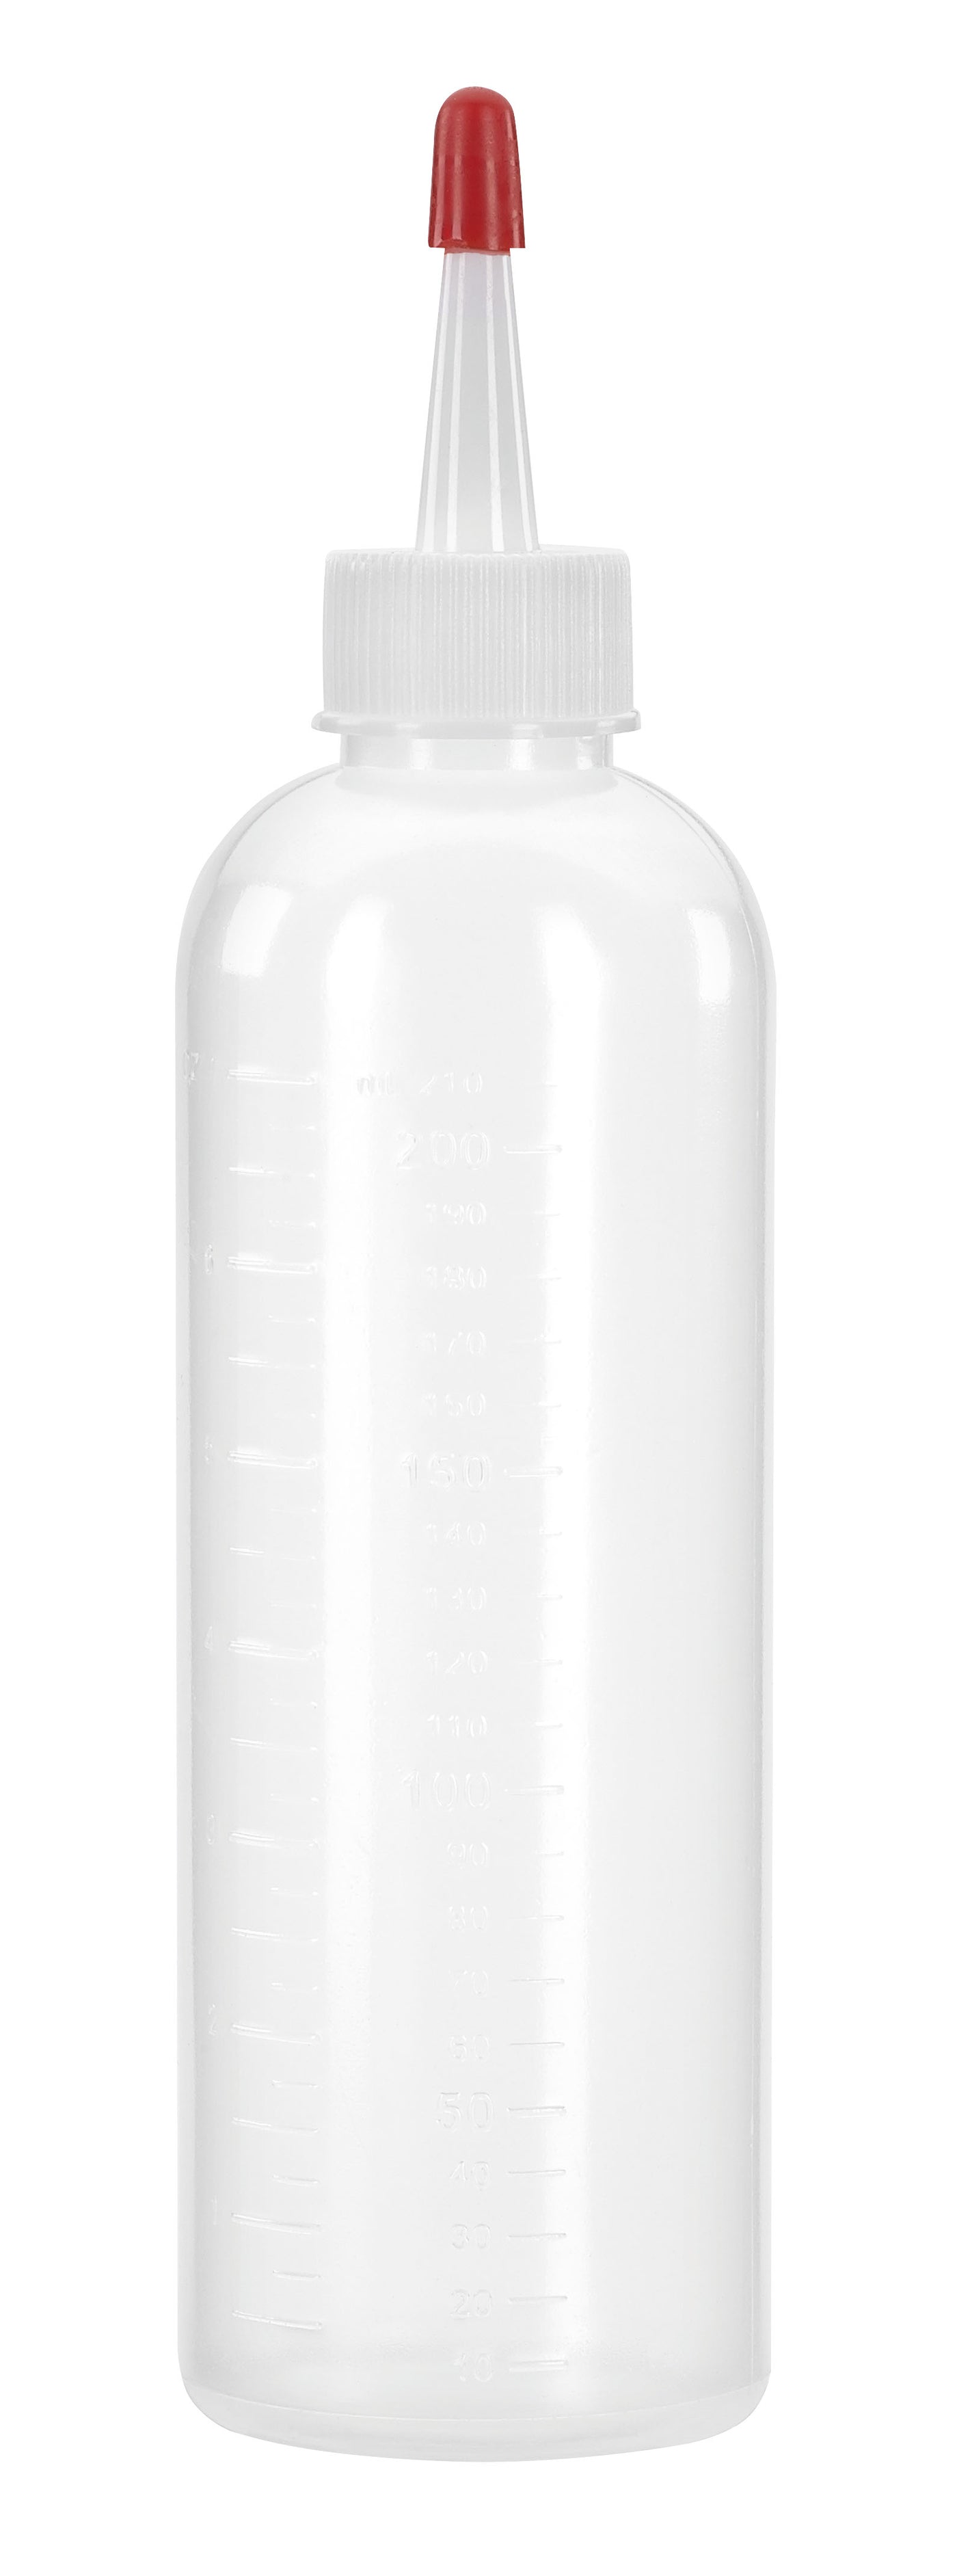 IdHAIR Gloss Applicator Bottle 200ml